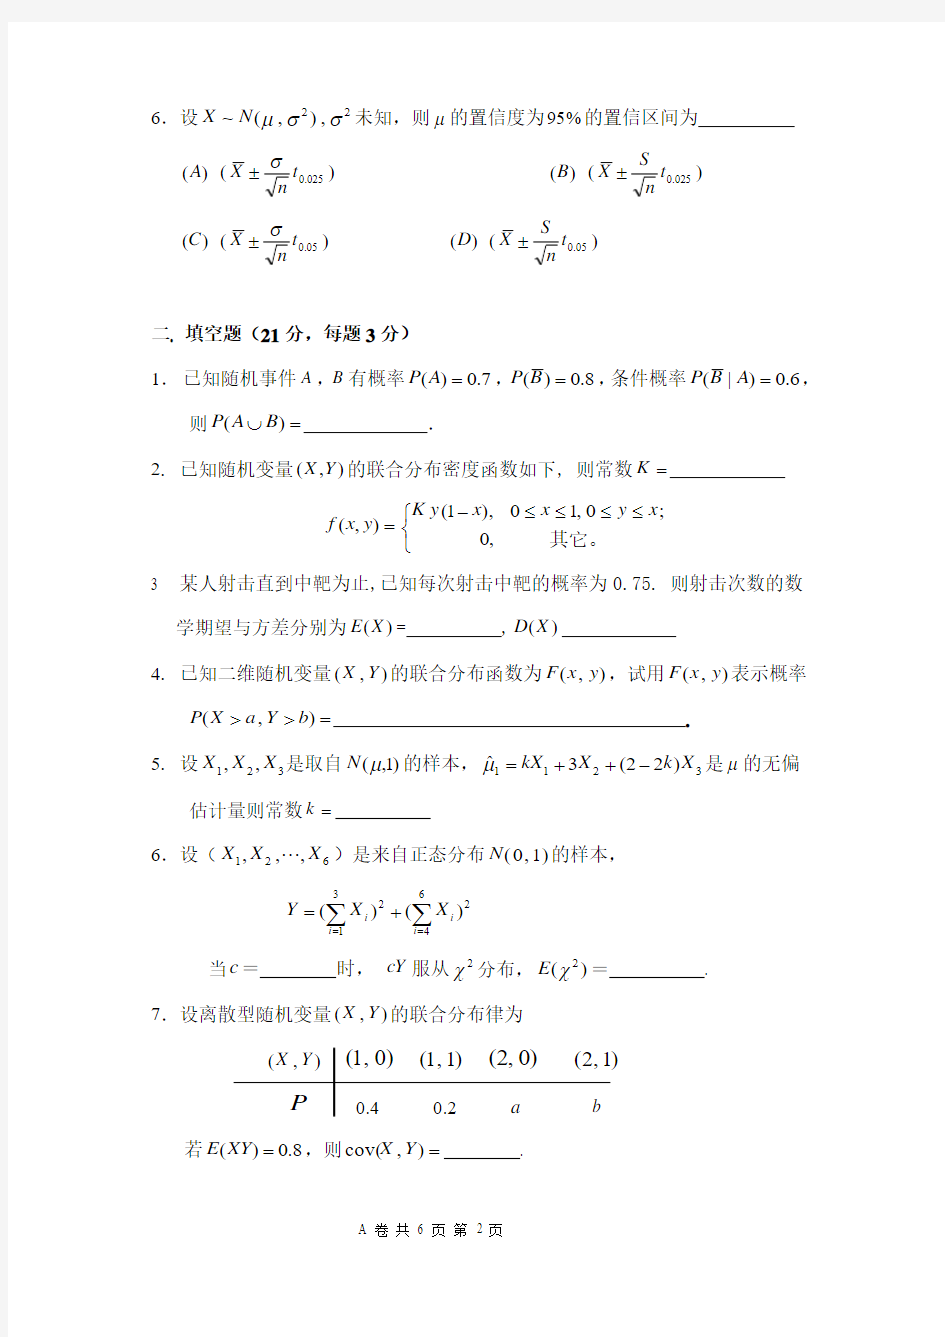 上海交通大学2005年6月概率论与数理统计试卷